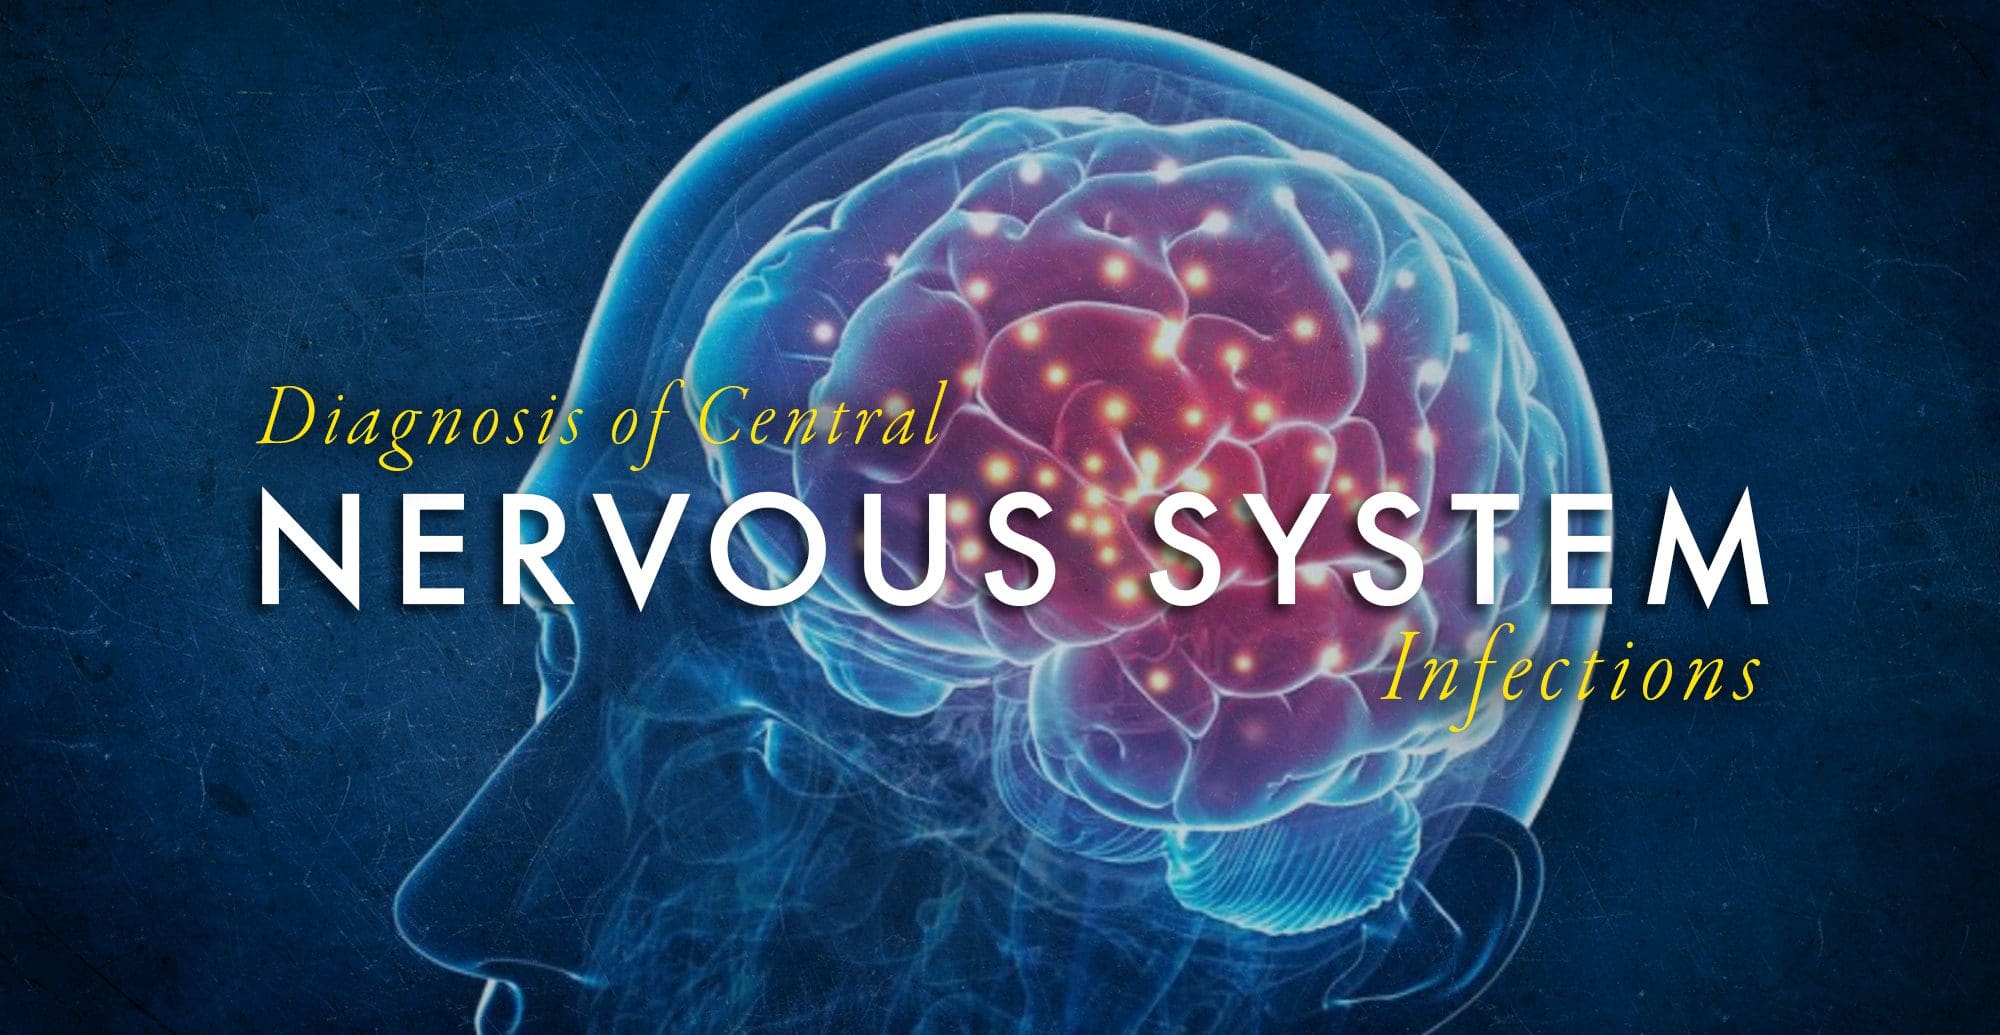 Imagen que demuestra el cerebro humano para el diagnóstico de infecciones del sistema nervioso central.